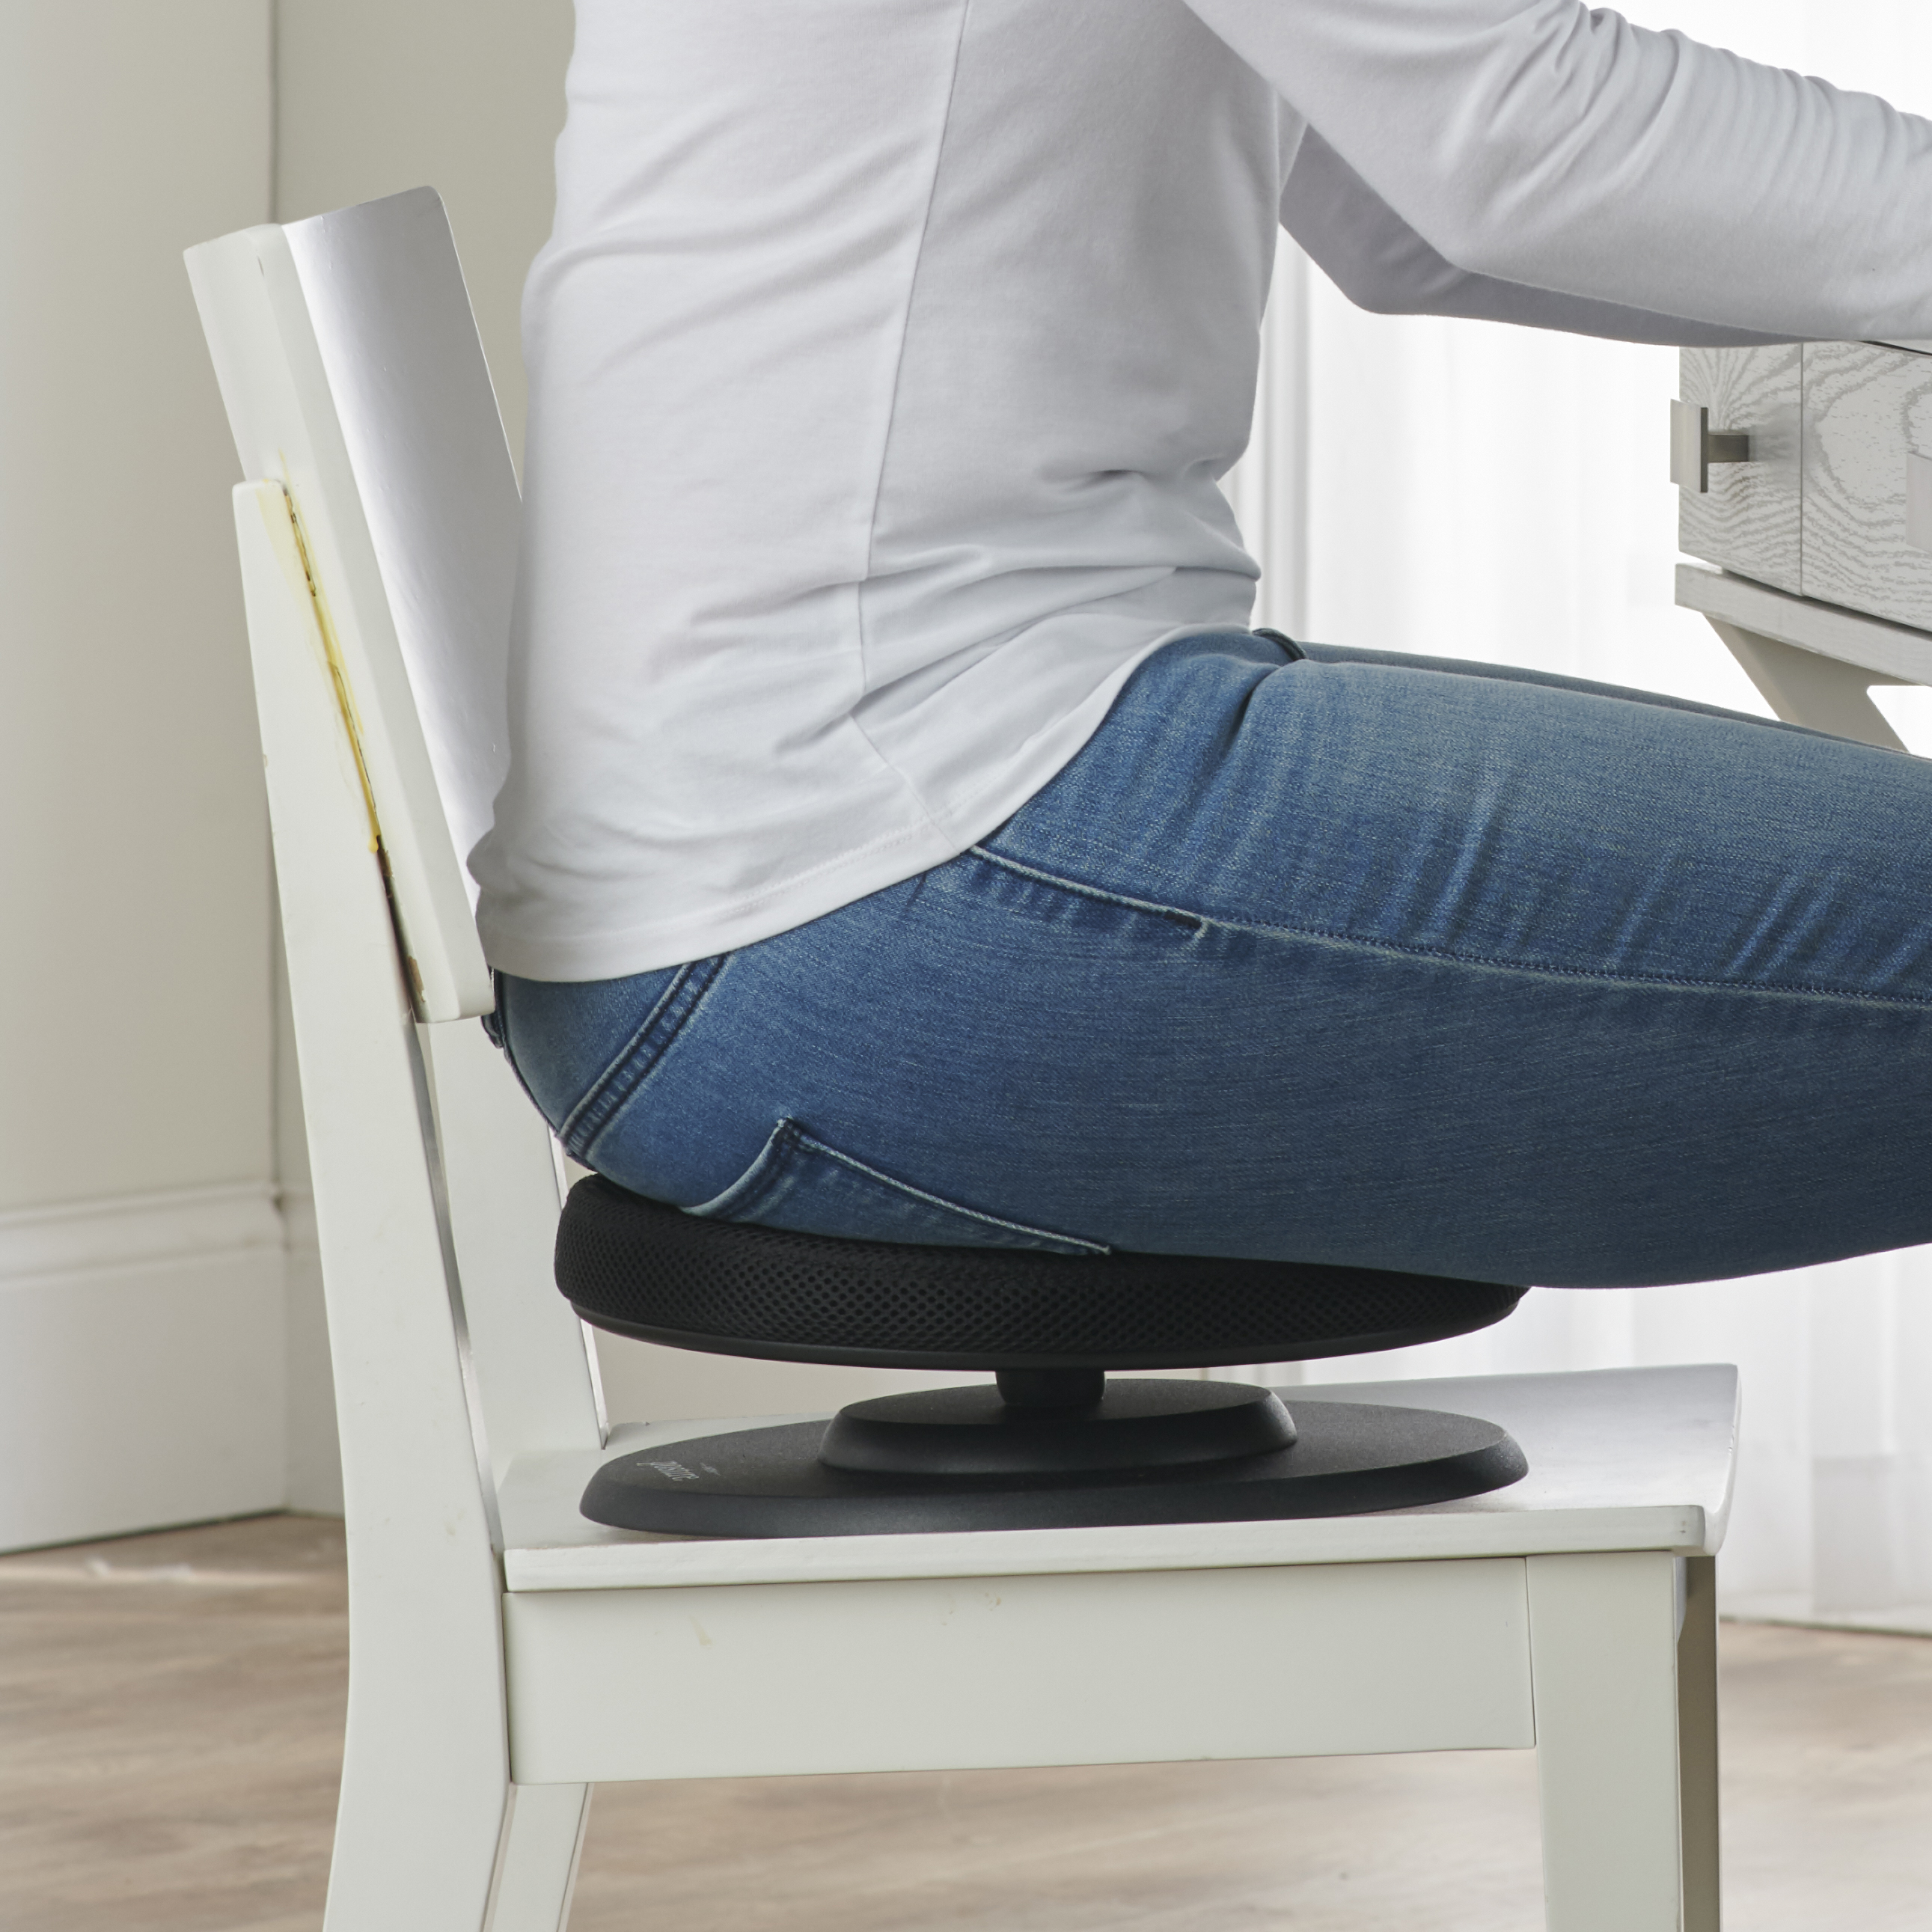 The Swedish Posture Seat - Hammacher Schlemmer